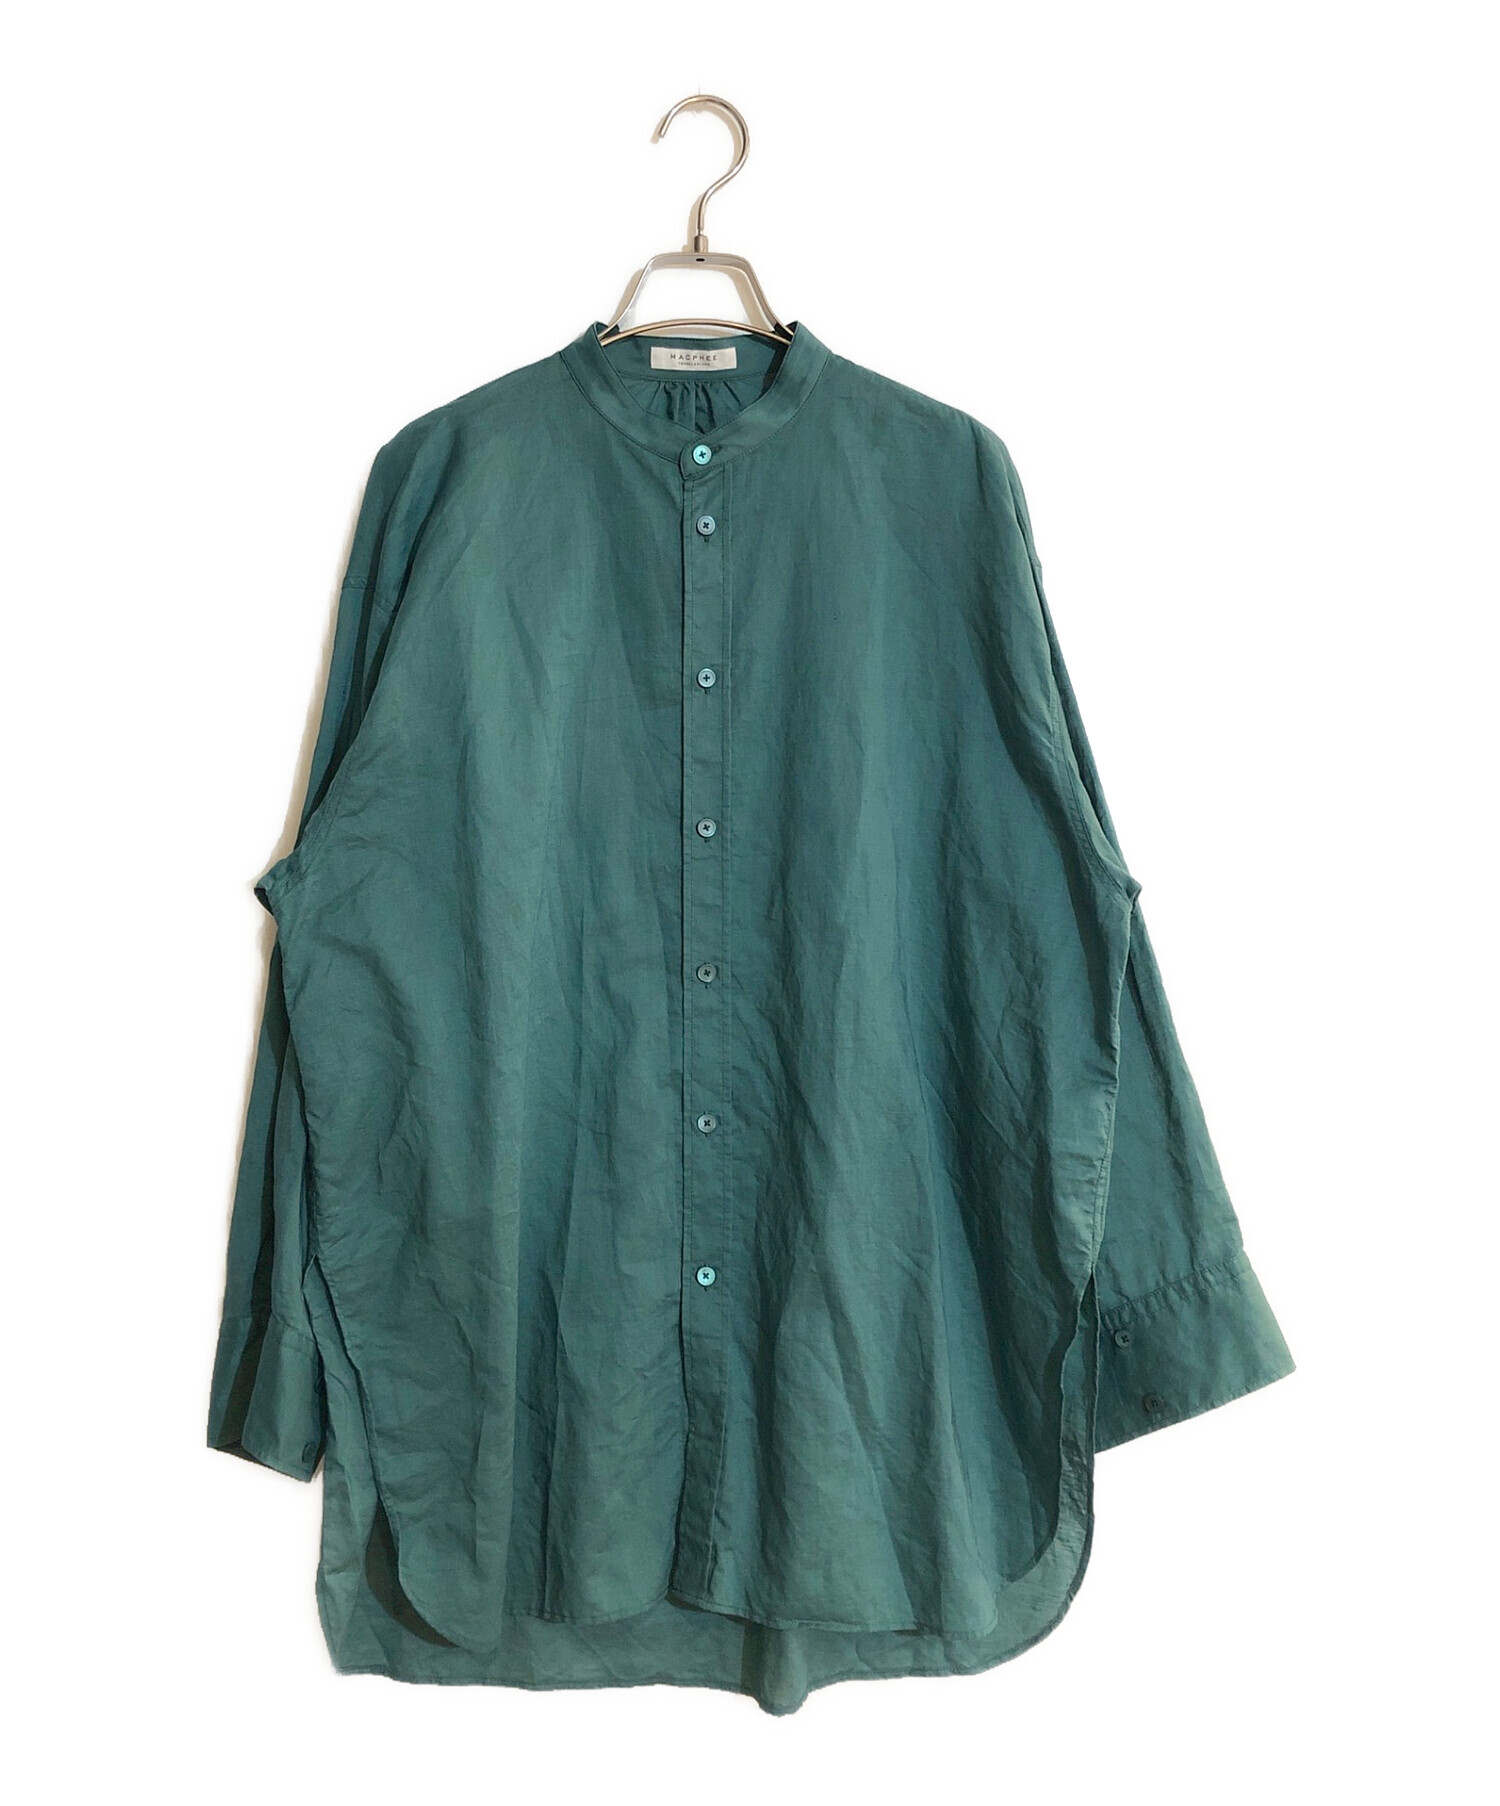 MACPHEE (マカフィー) コットンリネンシアー バンドカラーシャツ グリーン サイズ:SIZE 36